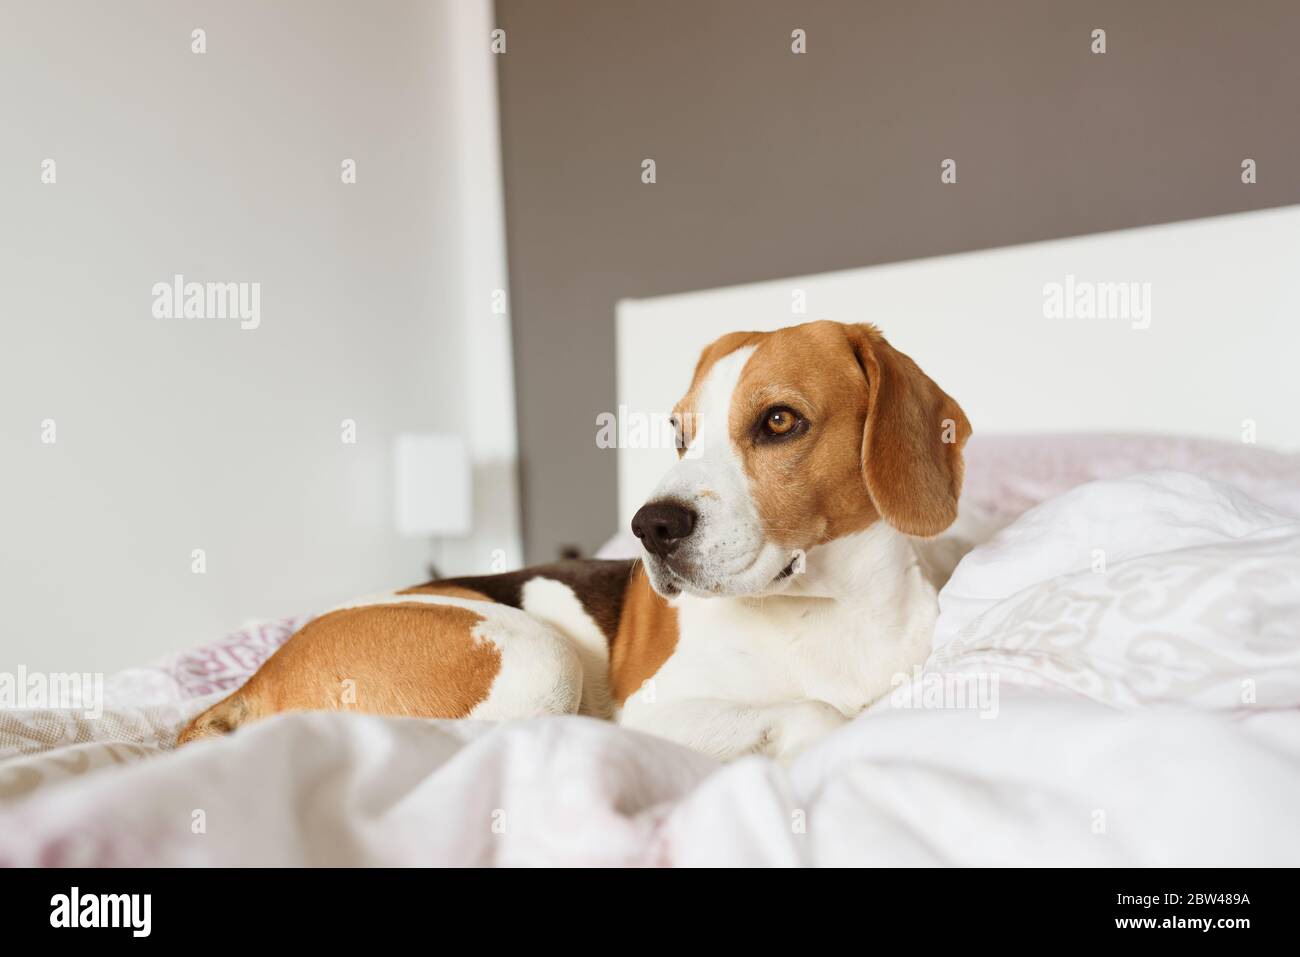 Beagle Hund schleicht sich zu seinem Besitzer Bett, wenn niemand beobachtet  Stockfotografie - Alamy